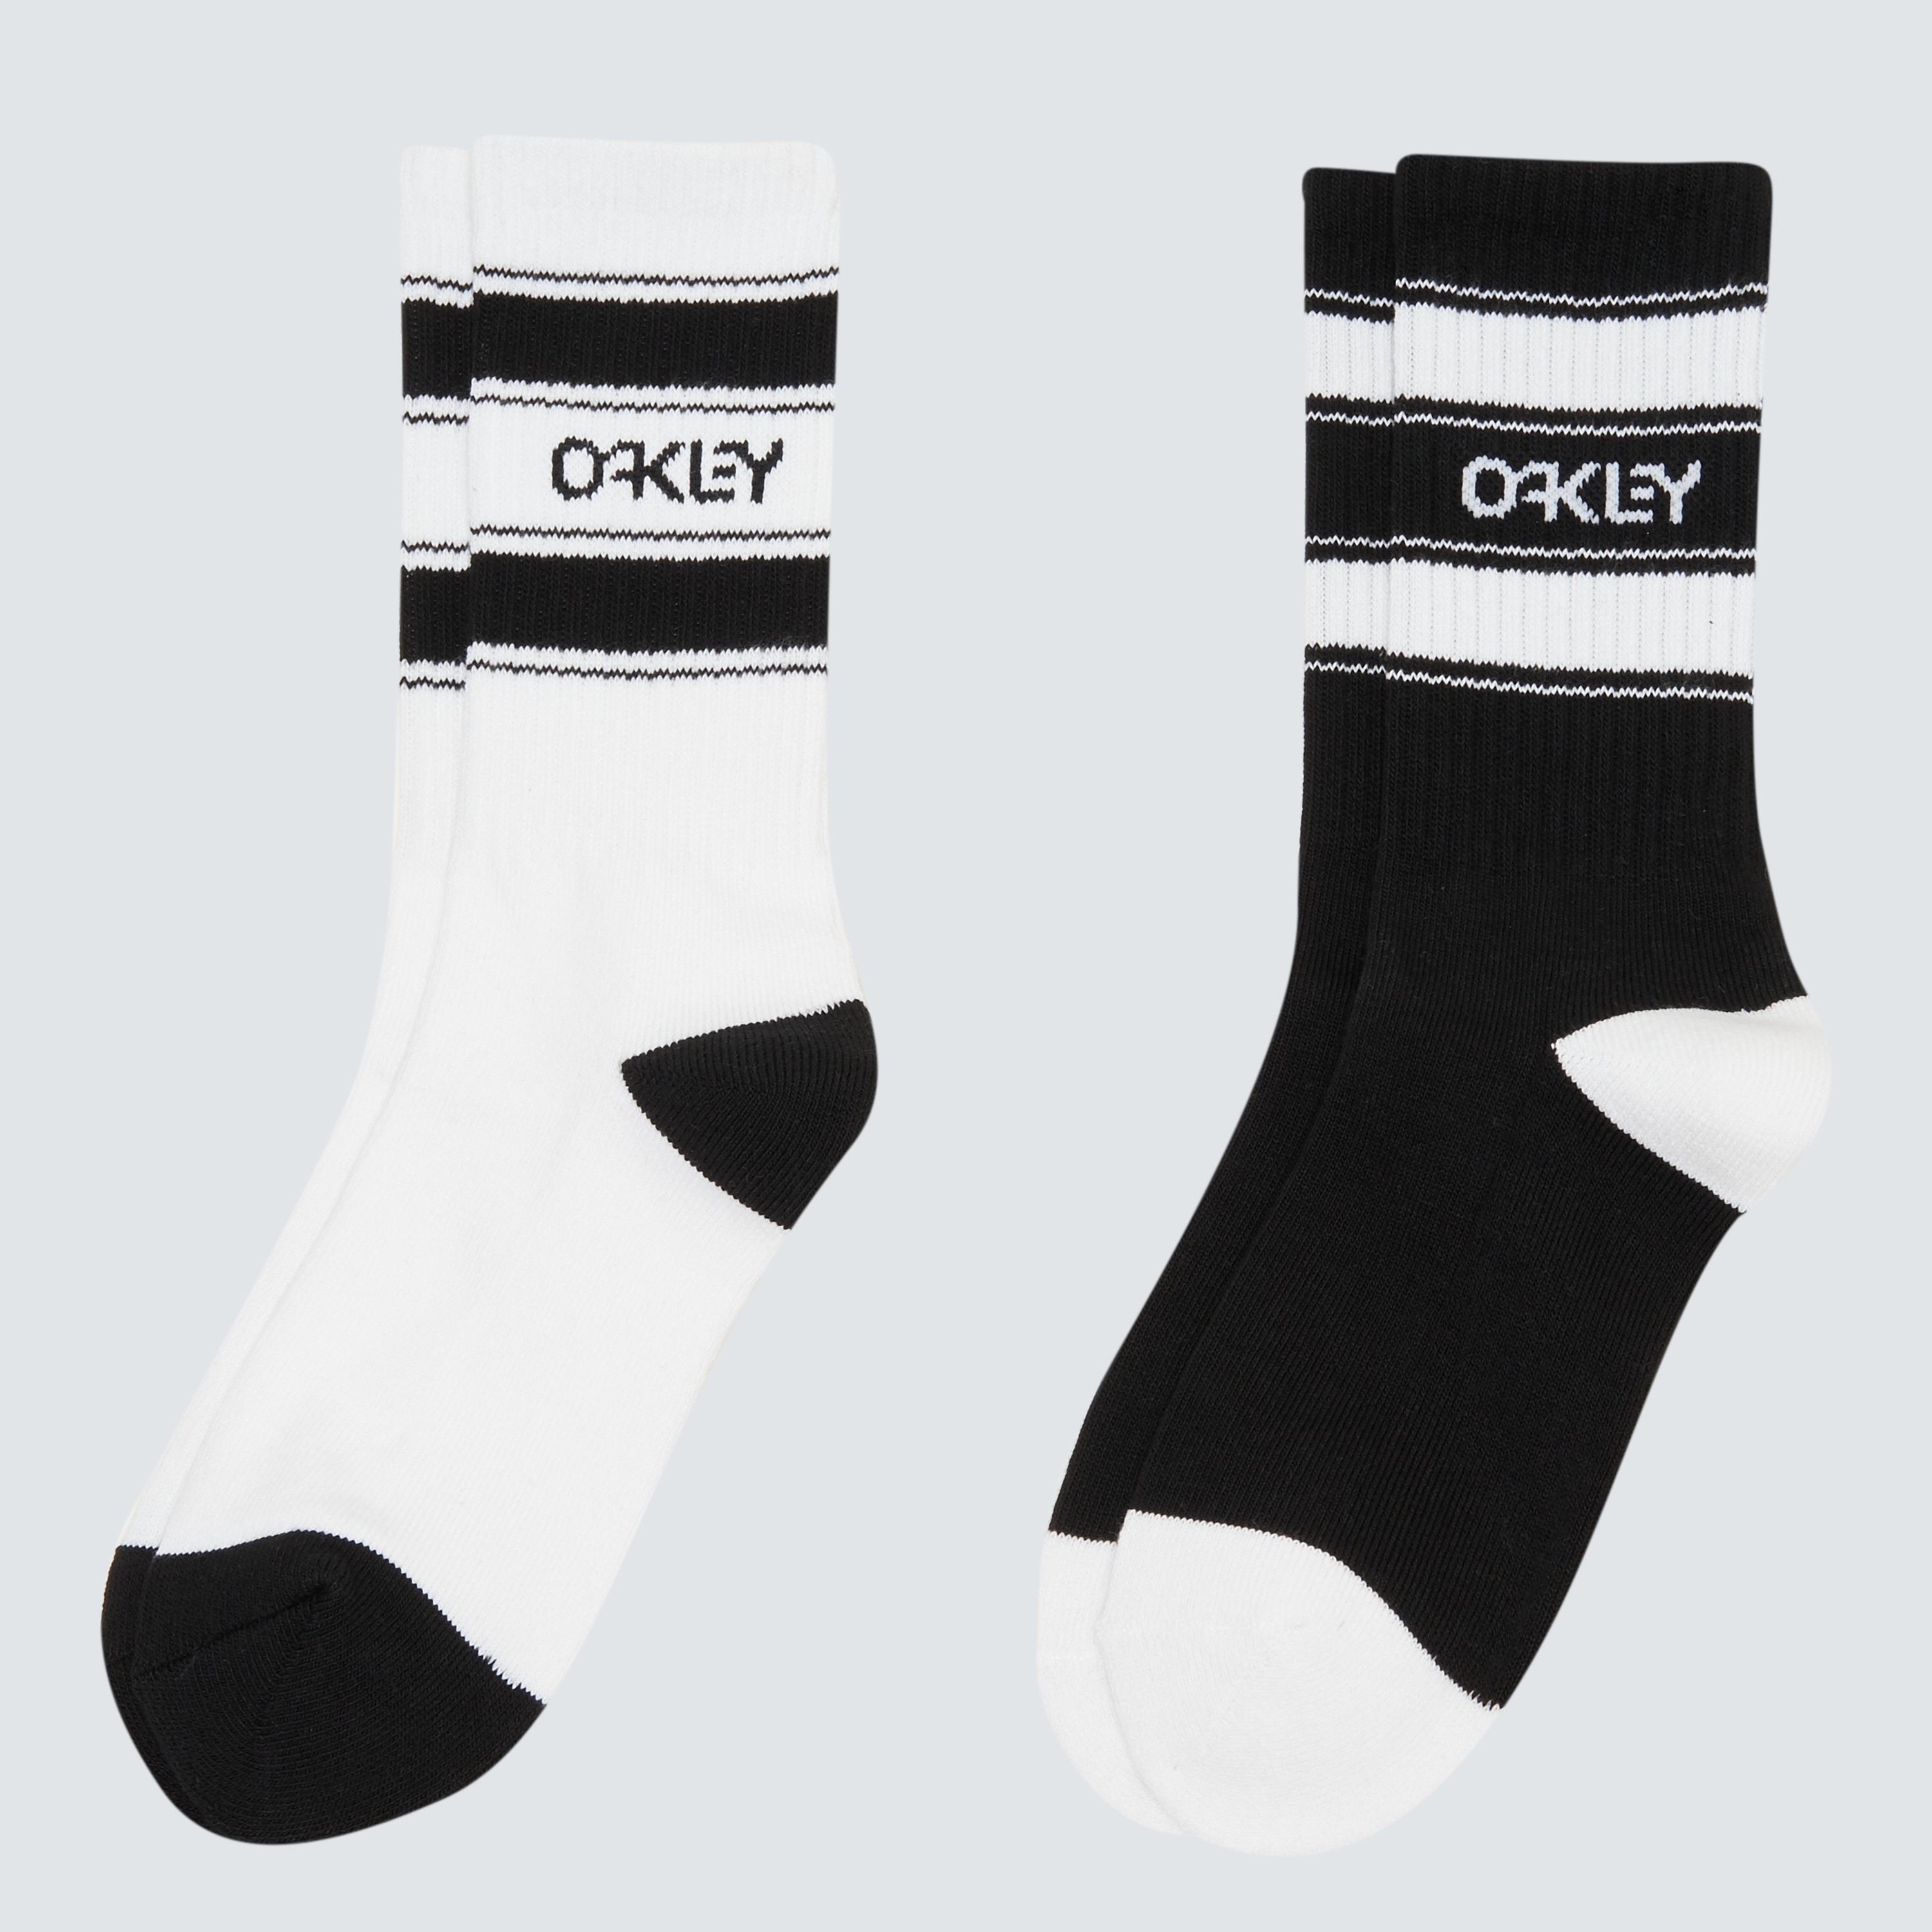 oakley socks black